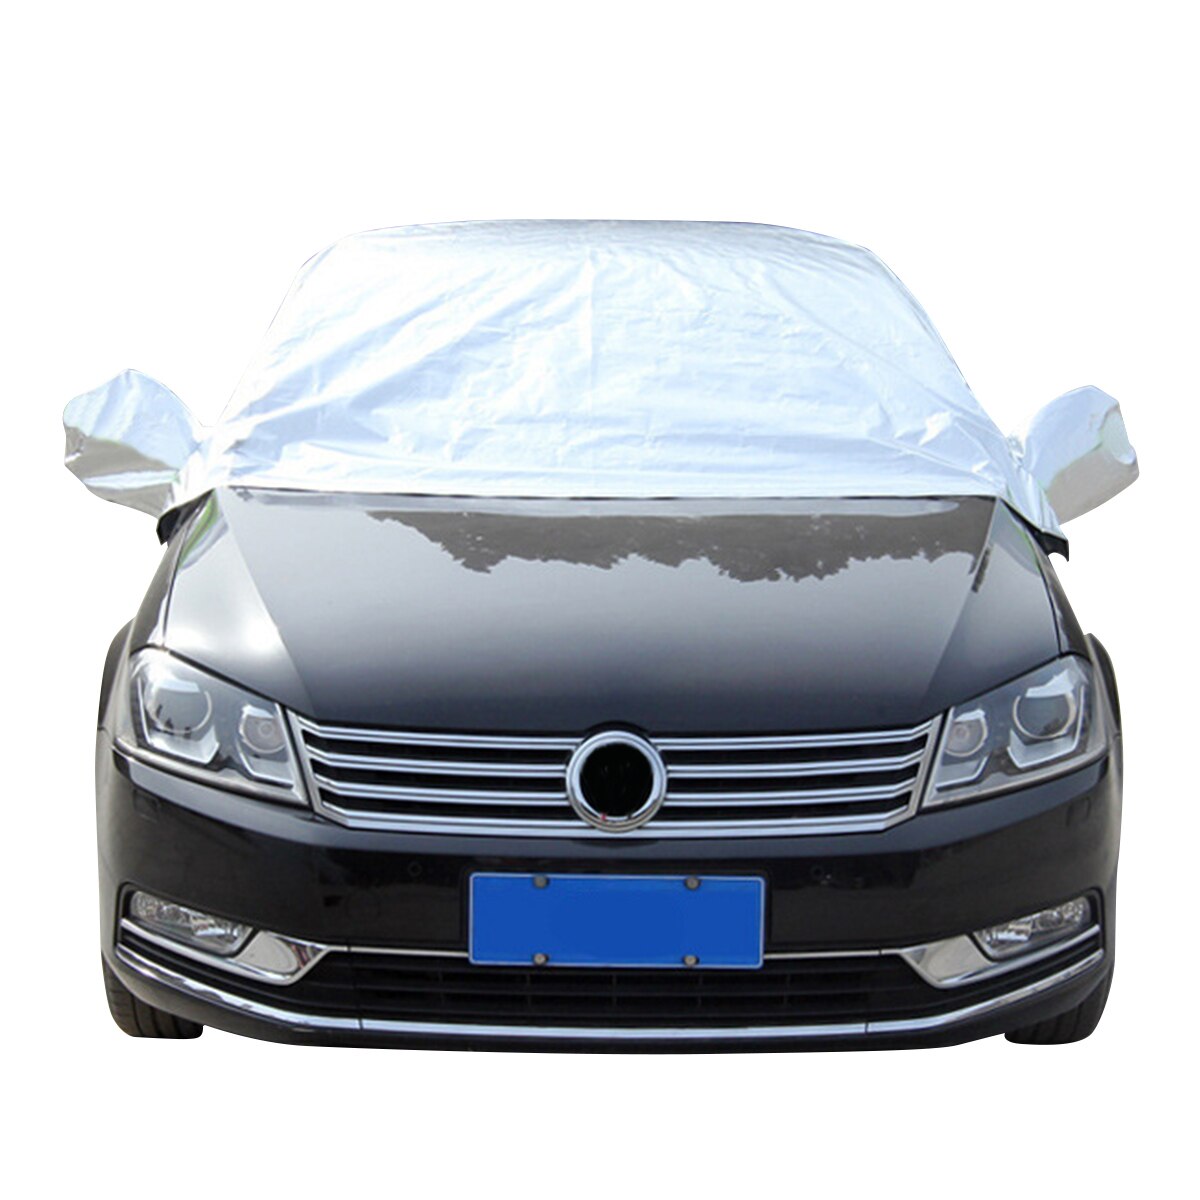 Car Cover Uv-bescherming Stofdicht Auto Cover Universele Half Semi Auto Bescherming Covers Met Wind-Proof Haak En zuignap